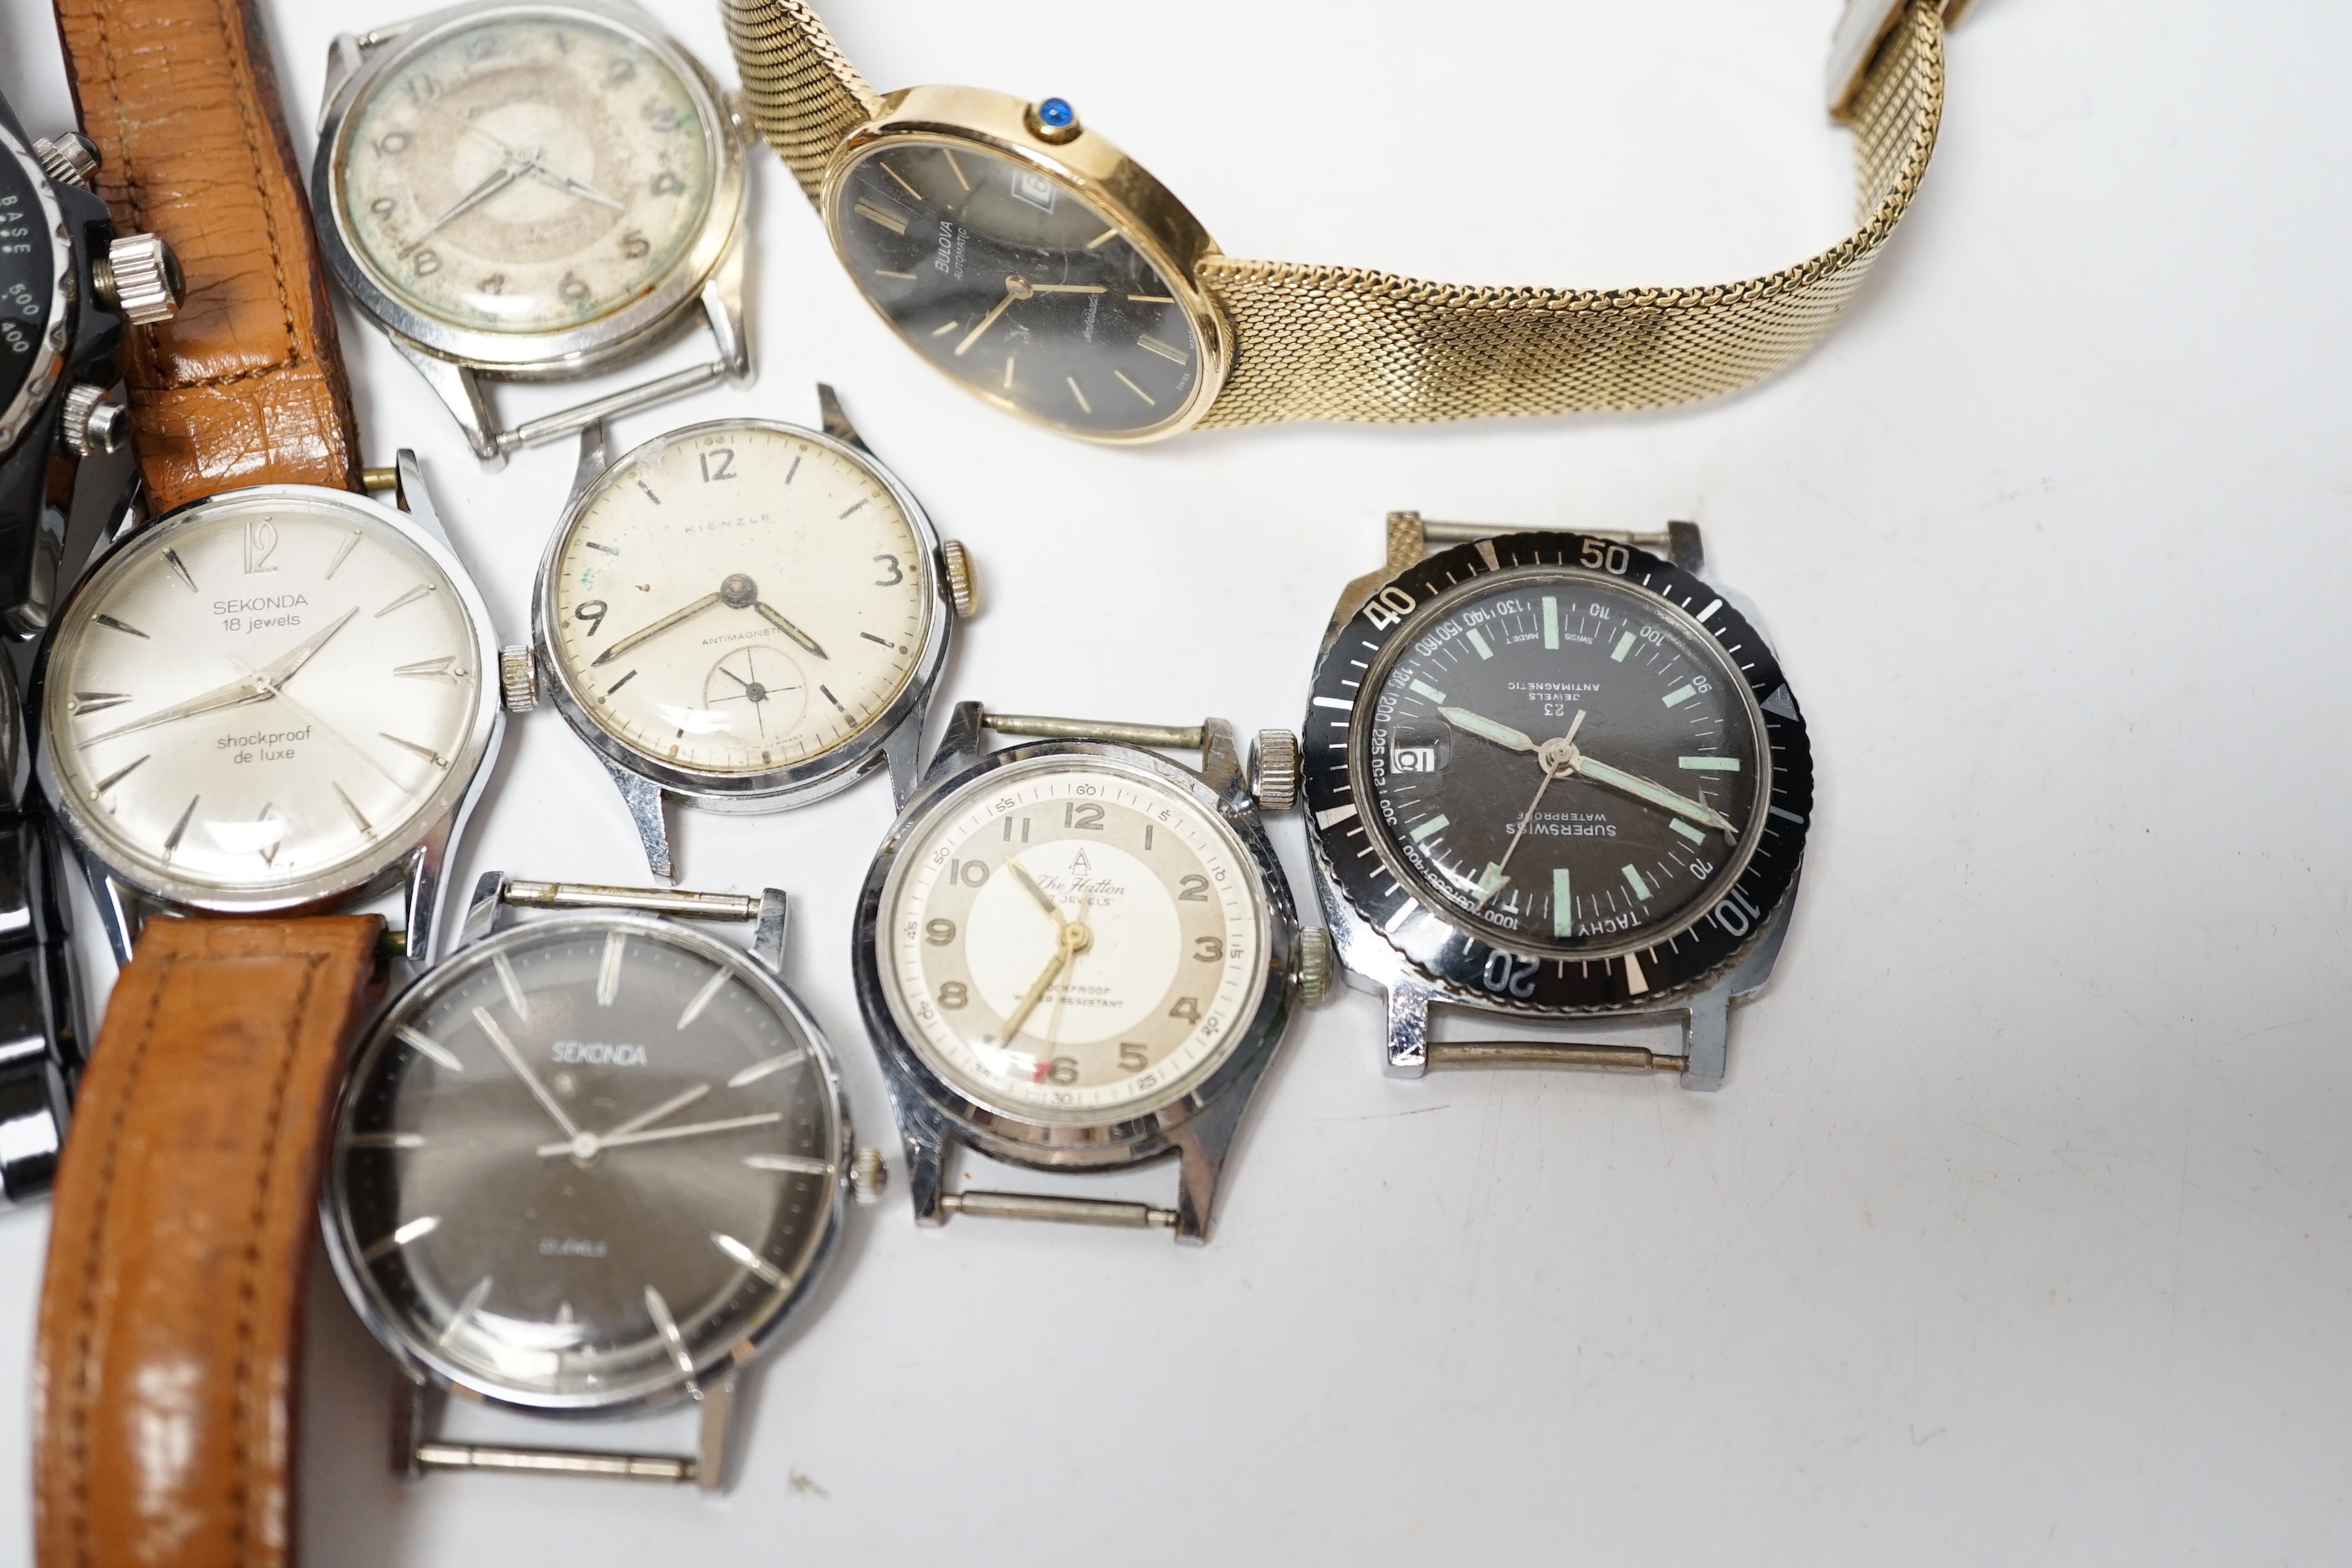 Assorted gentleman's watches including Certina and Sekonda.